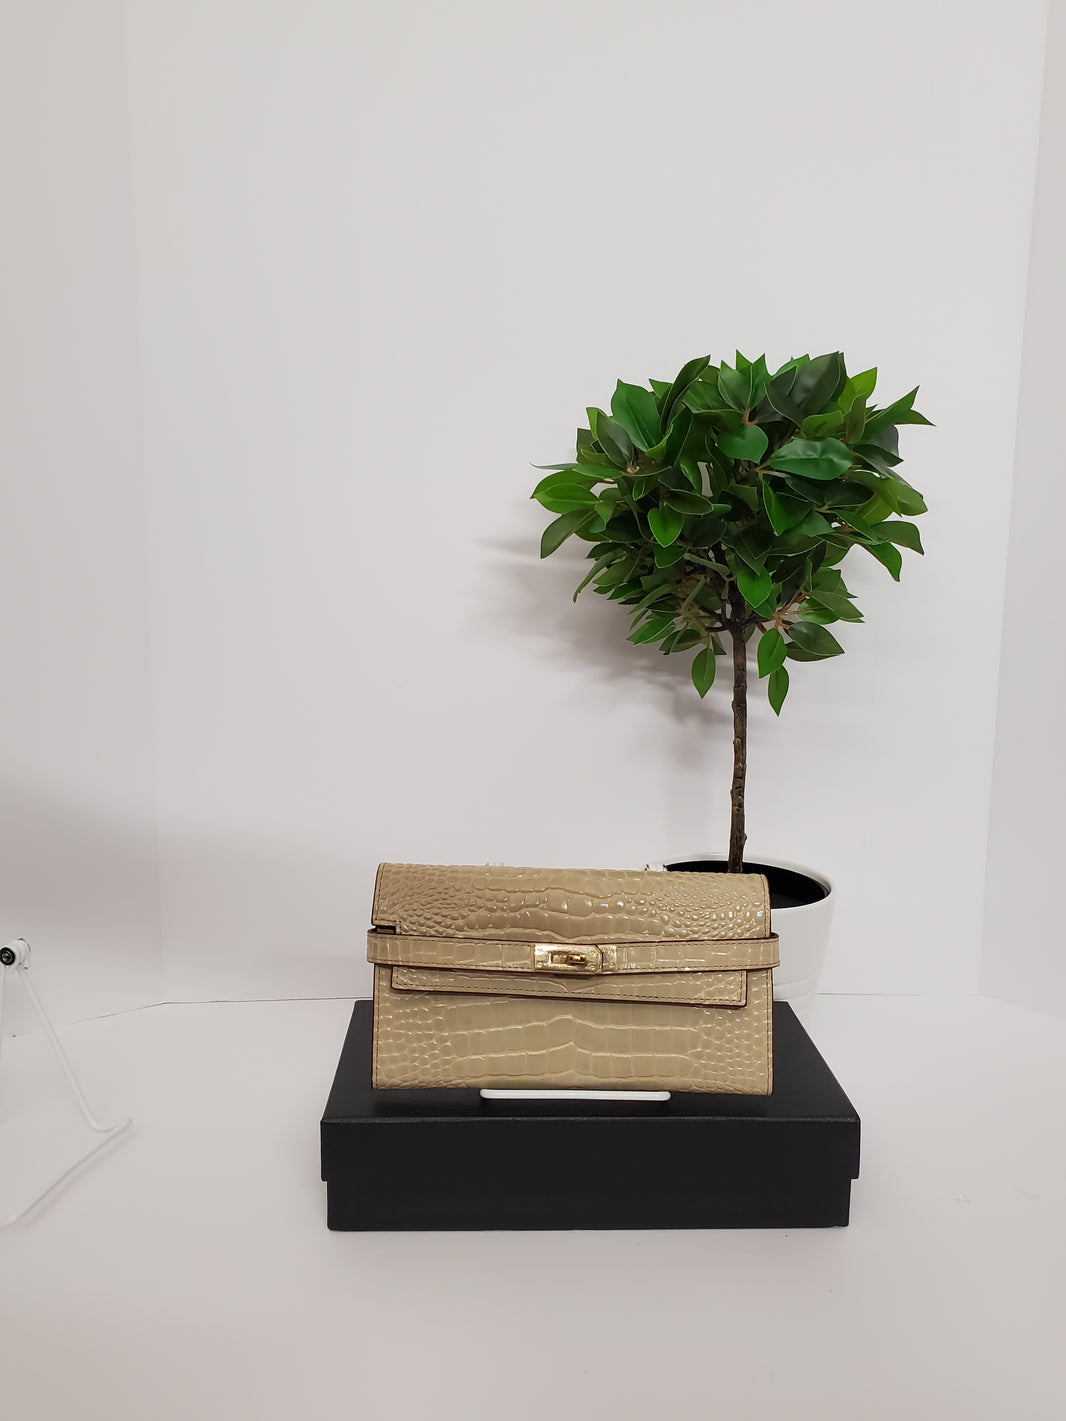 Luxury genuine leather handbags – Lemairi